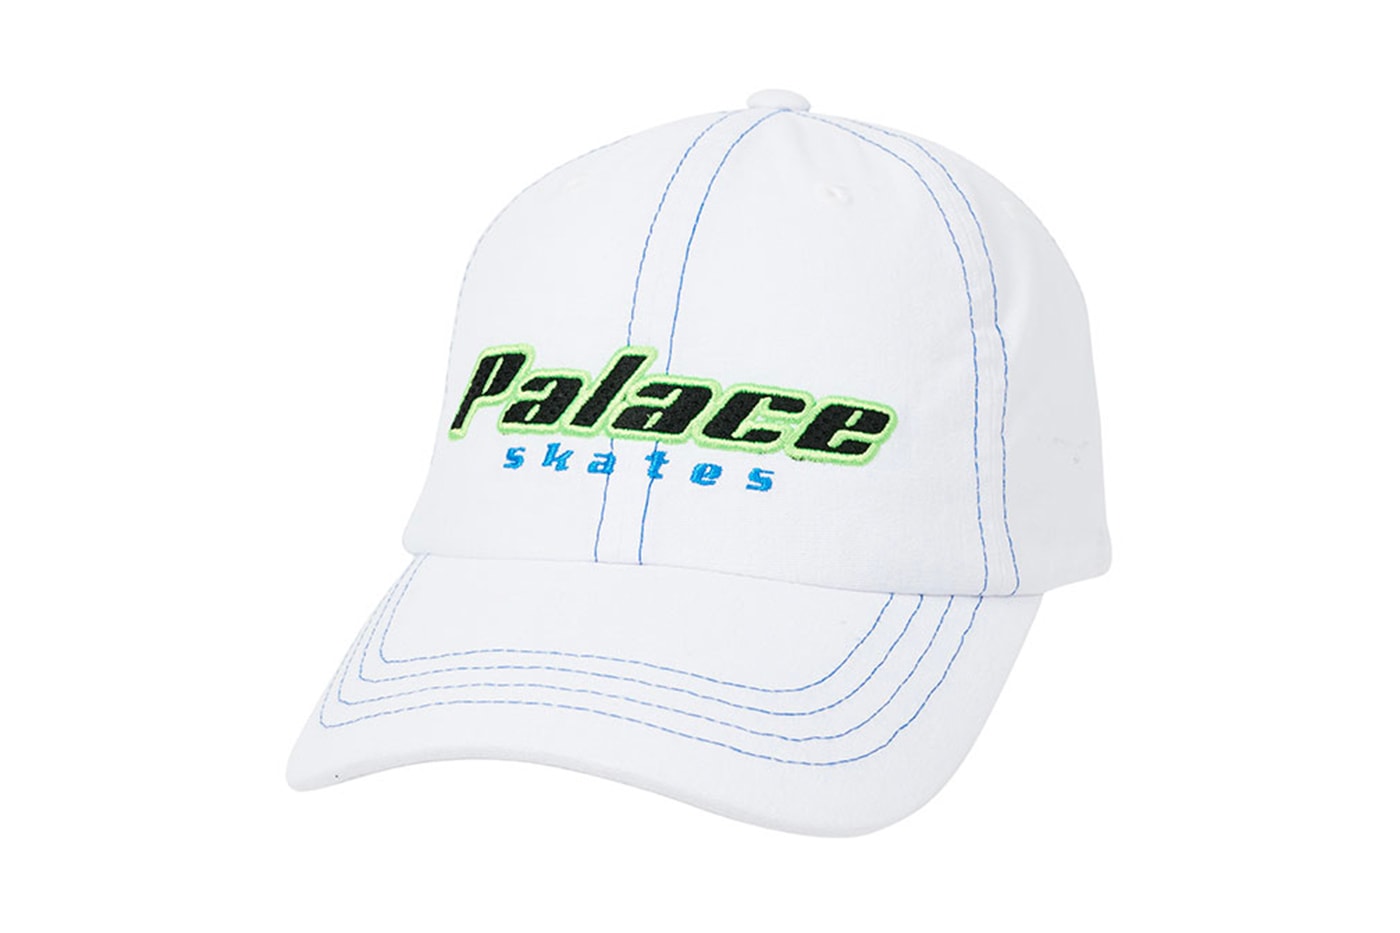 팔라스 2020 가을 컬렉션 - 모자, 트러커 캡, 버킷햇, 부니햇, 팔라스 로고, 트라이퍼그, 팔라스 모자, 고어텍스, 불독